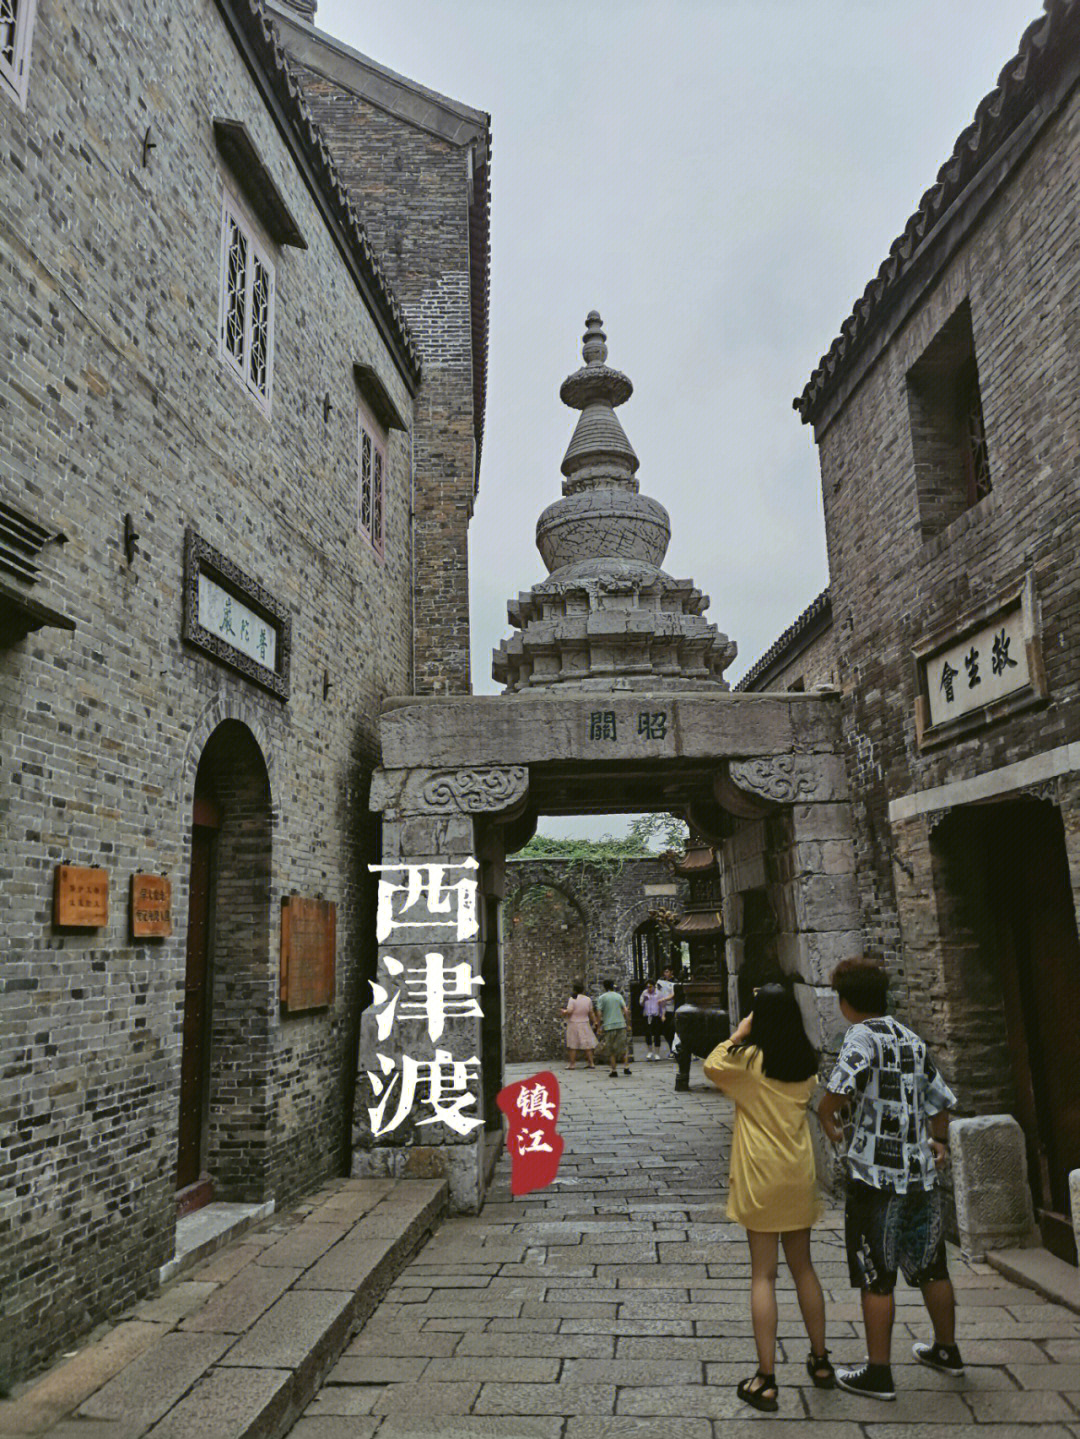 西津渡,始建于六朝时期,位于江苏镇江城西的云台山麓,古代这里是长江